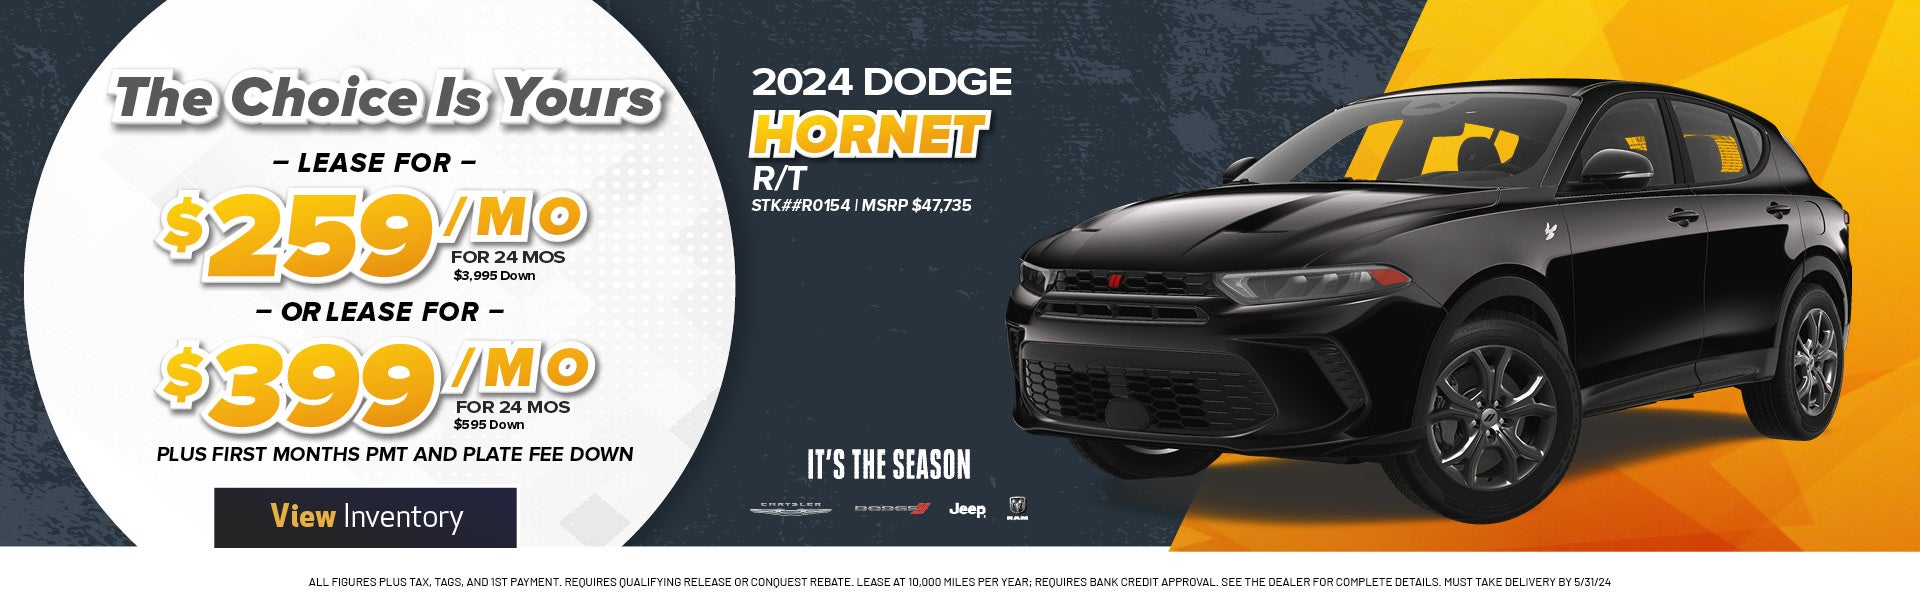 2024 dodge hornet 